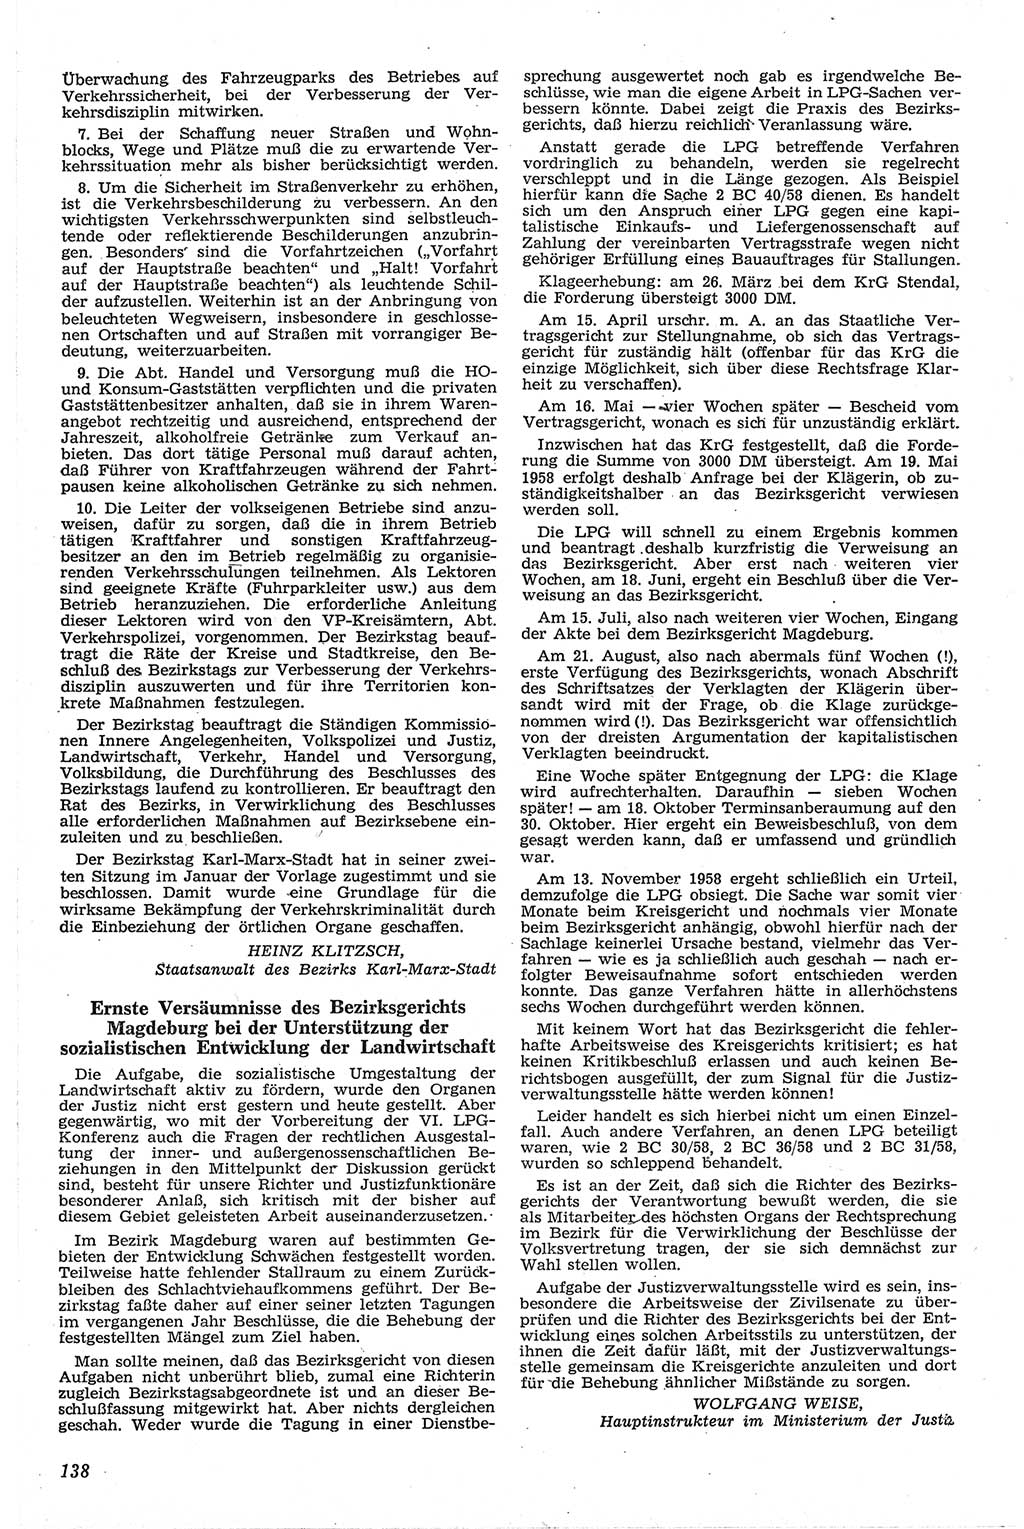 Neue Justiz (NJ), Zeitschrift für Recht und Rechtswissenschaft [Deutsche Demokratische Republik (DDR)], 13. Jahrgang 1959, Seite 138 (NJ DDR 1959, S. 138)